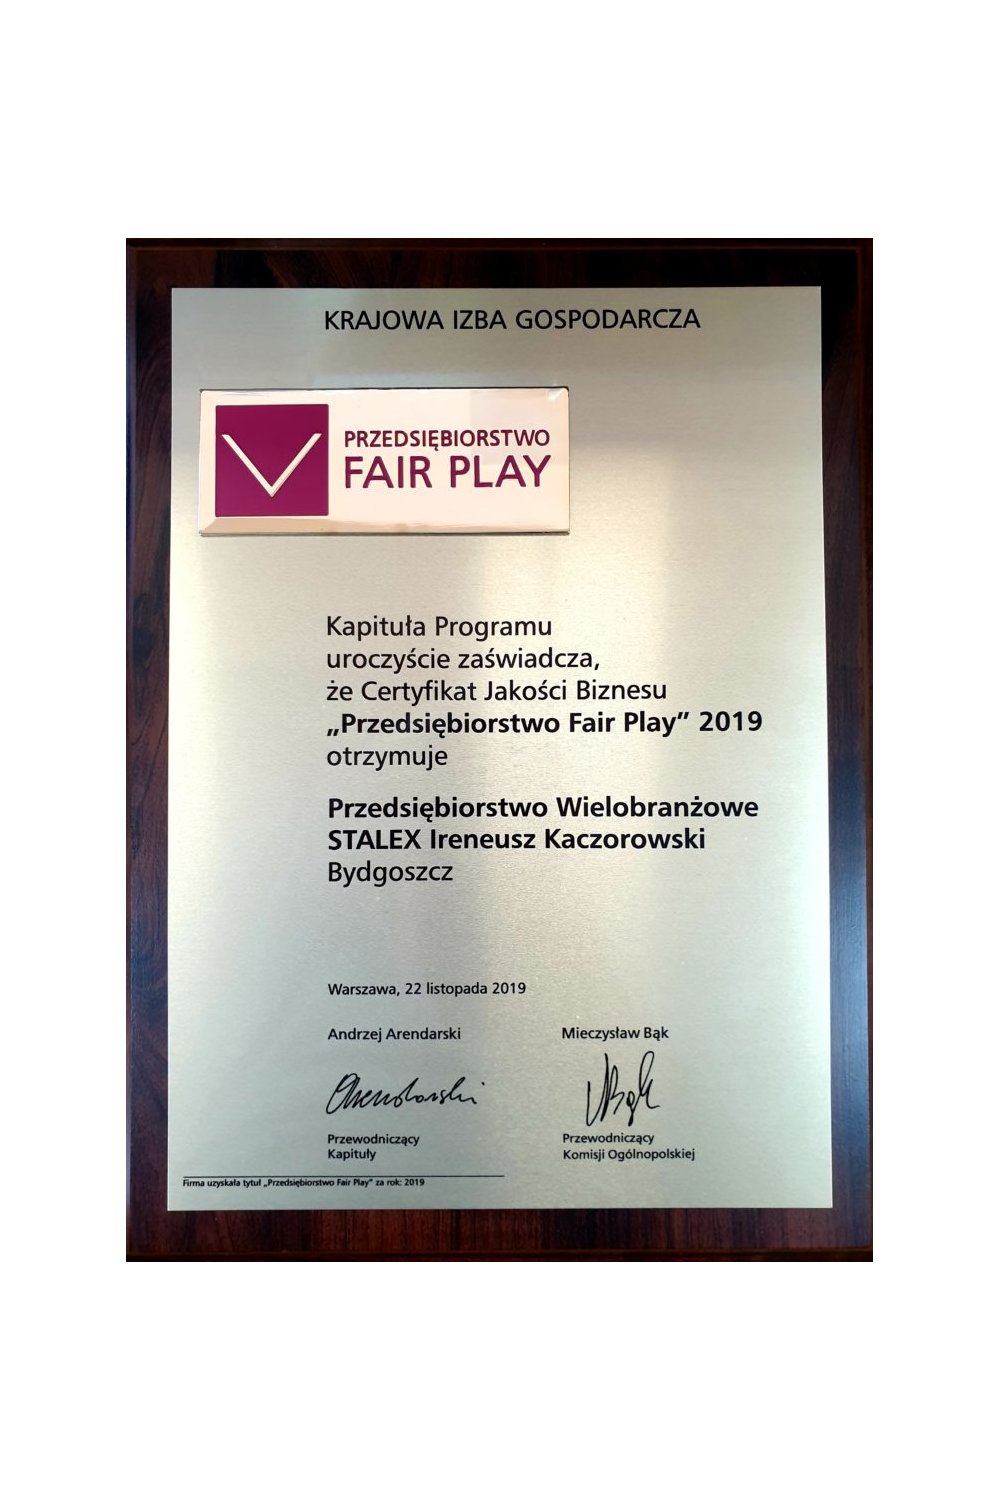 Certyfikat Jakości Biznesu "Przedsiębiorstwo Fair Play" 2019 - zdjęcie